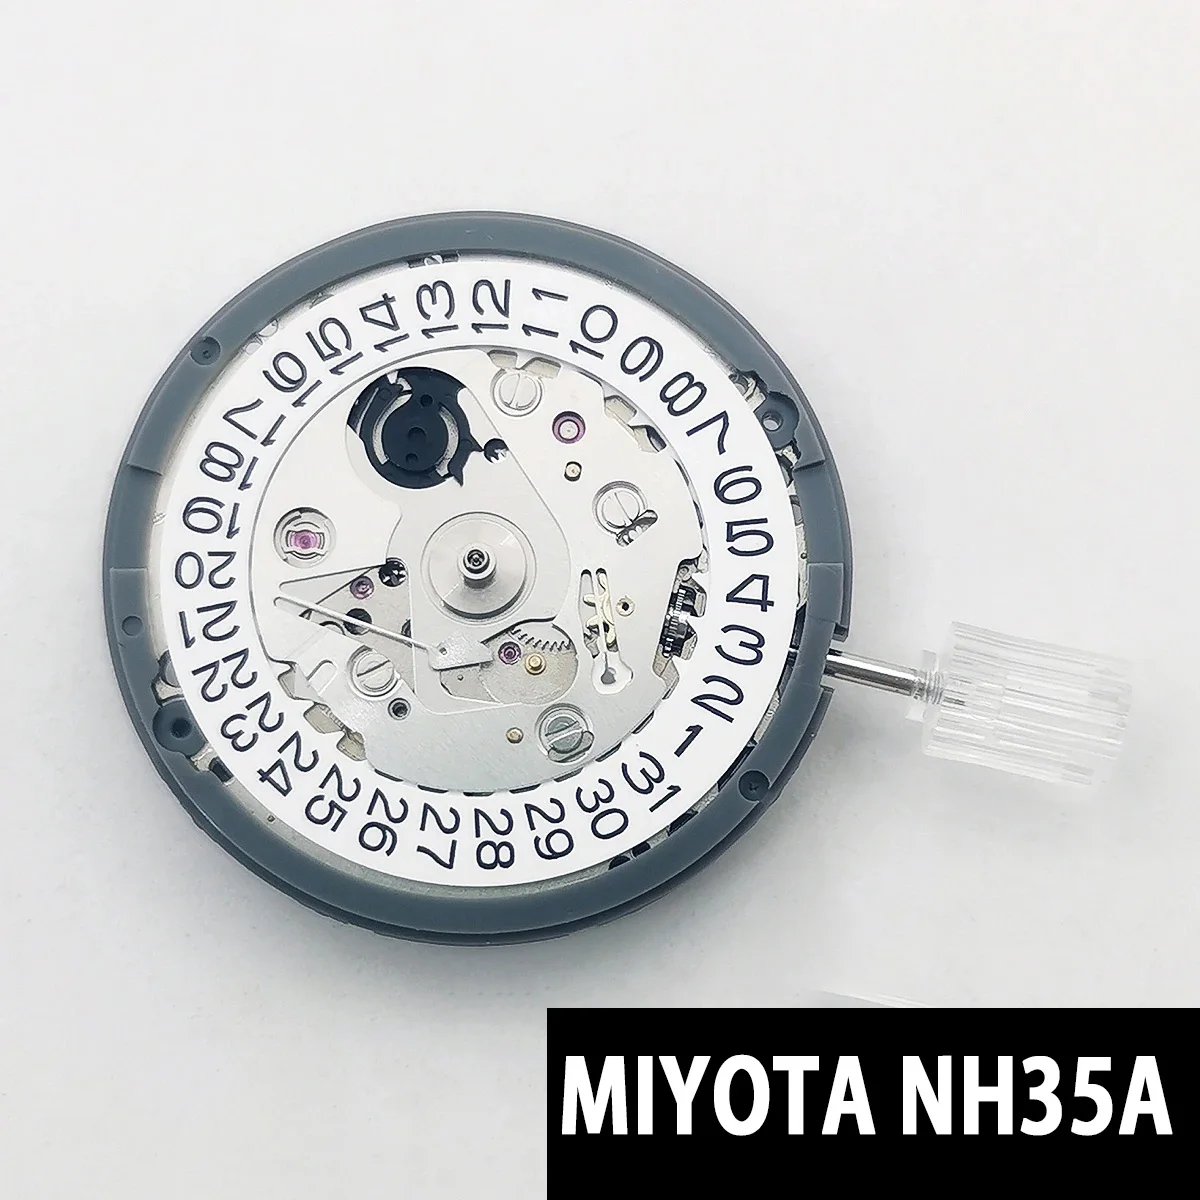 

Японский высококачественный механический механизм Seiko NH35A, 3 часа, белый, колесо для даты, 24 Драгоценности, высокоточный механизм с автоподзаводом